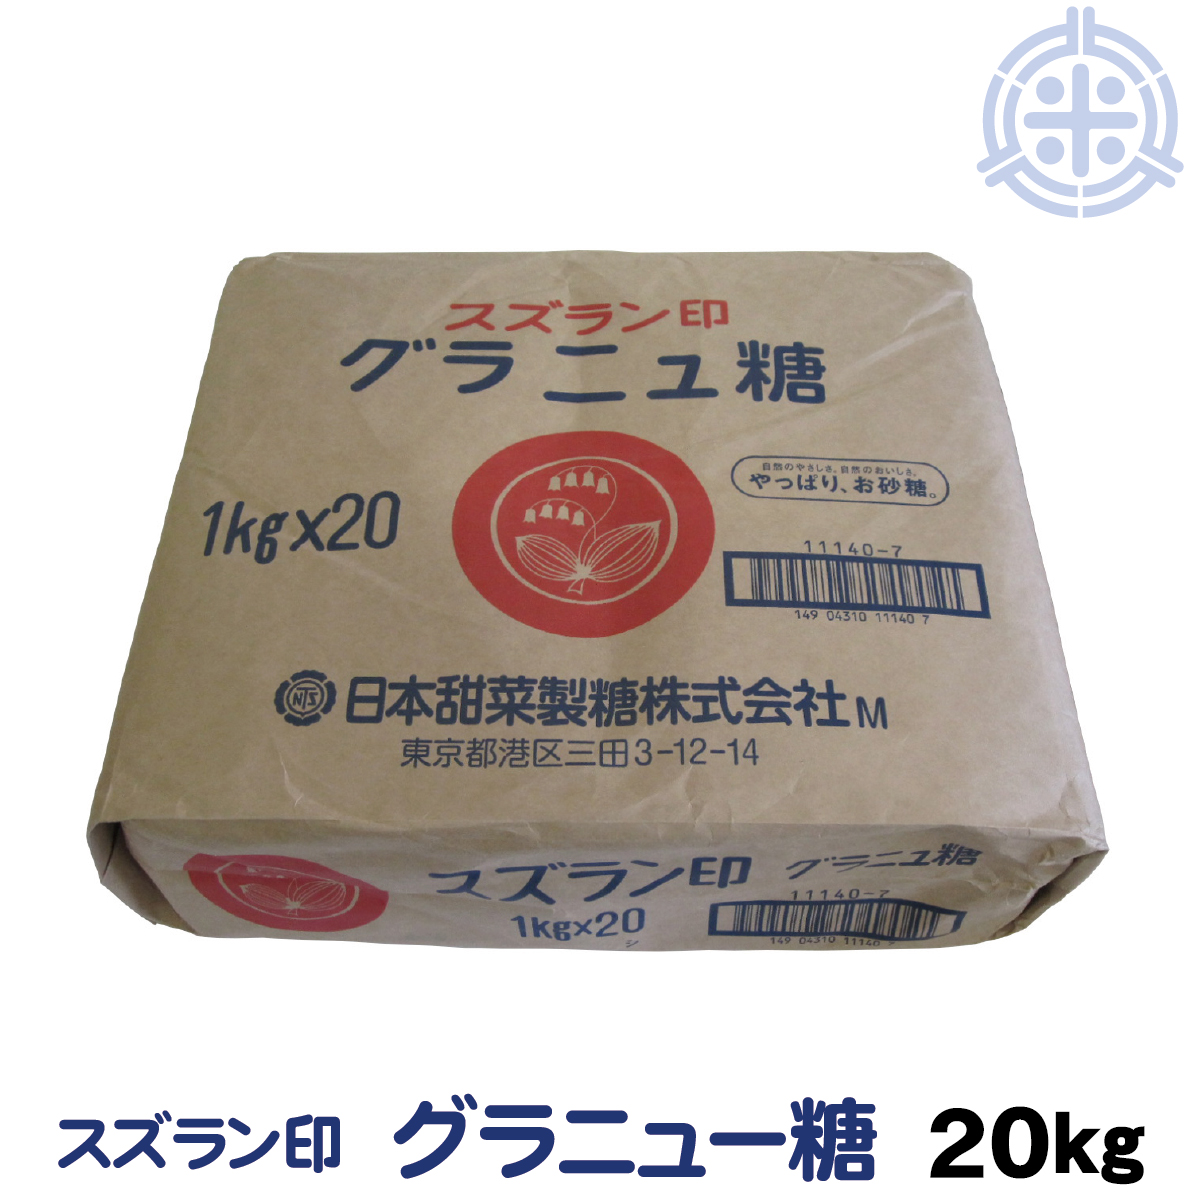  lily of the valley seal beet granulated sugar ... sugar 1Kg×20 Japan .. made sugar ni ton 